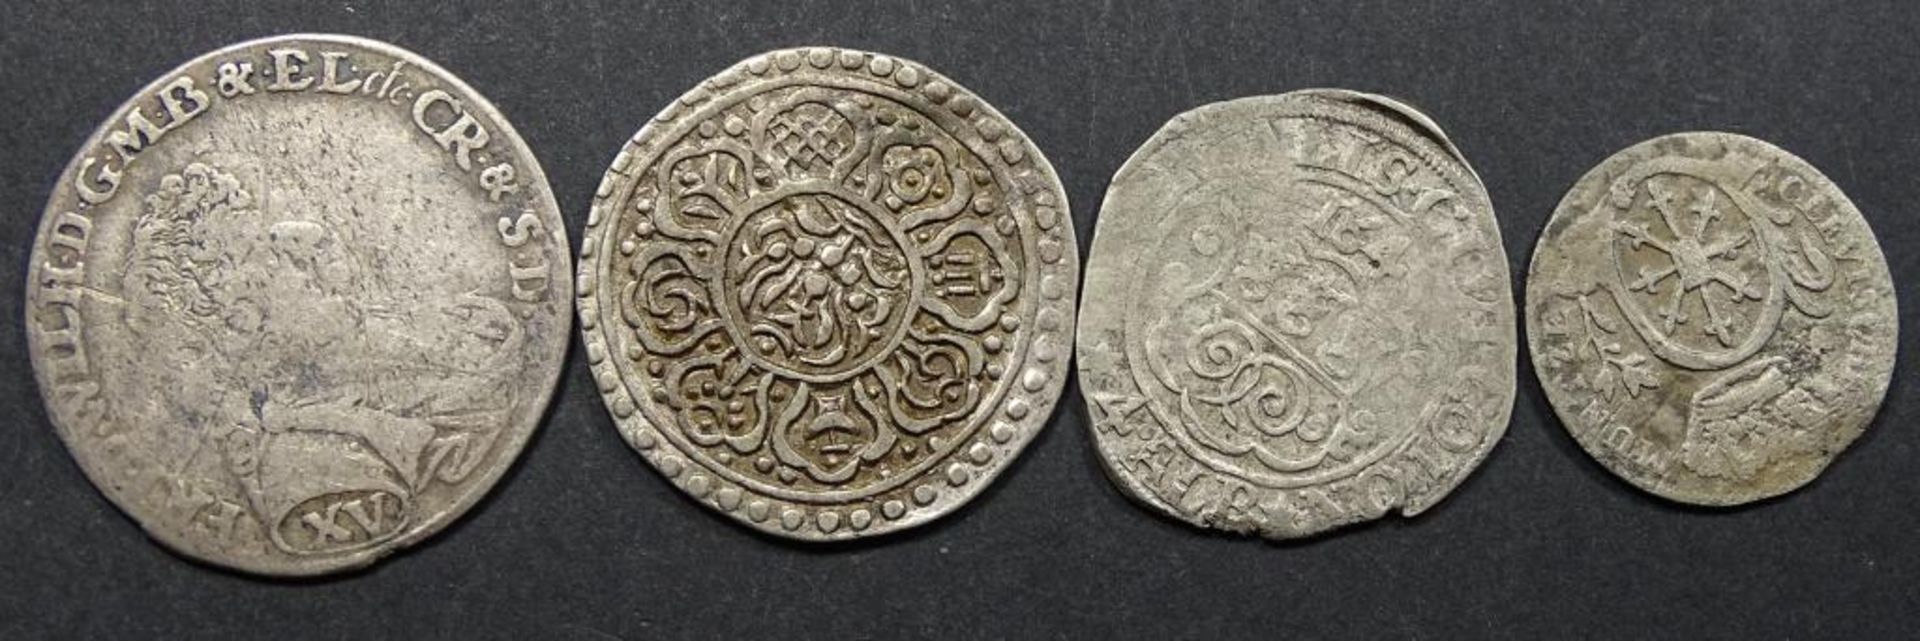 Antike Silber Münzen.ges.gew. 15gr - Bild 2 aus 2